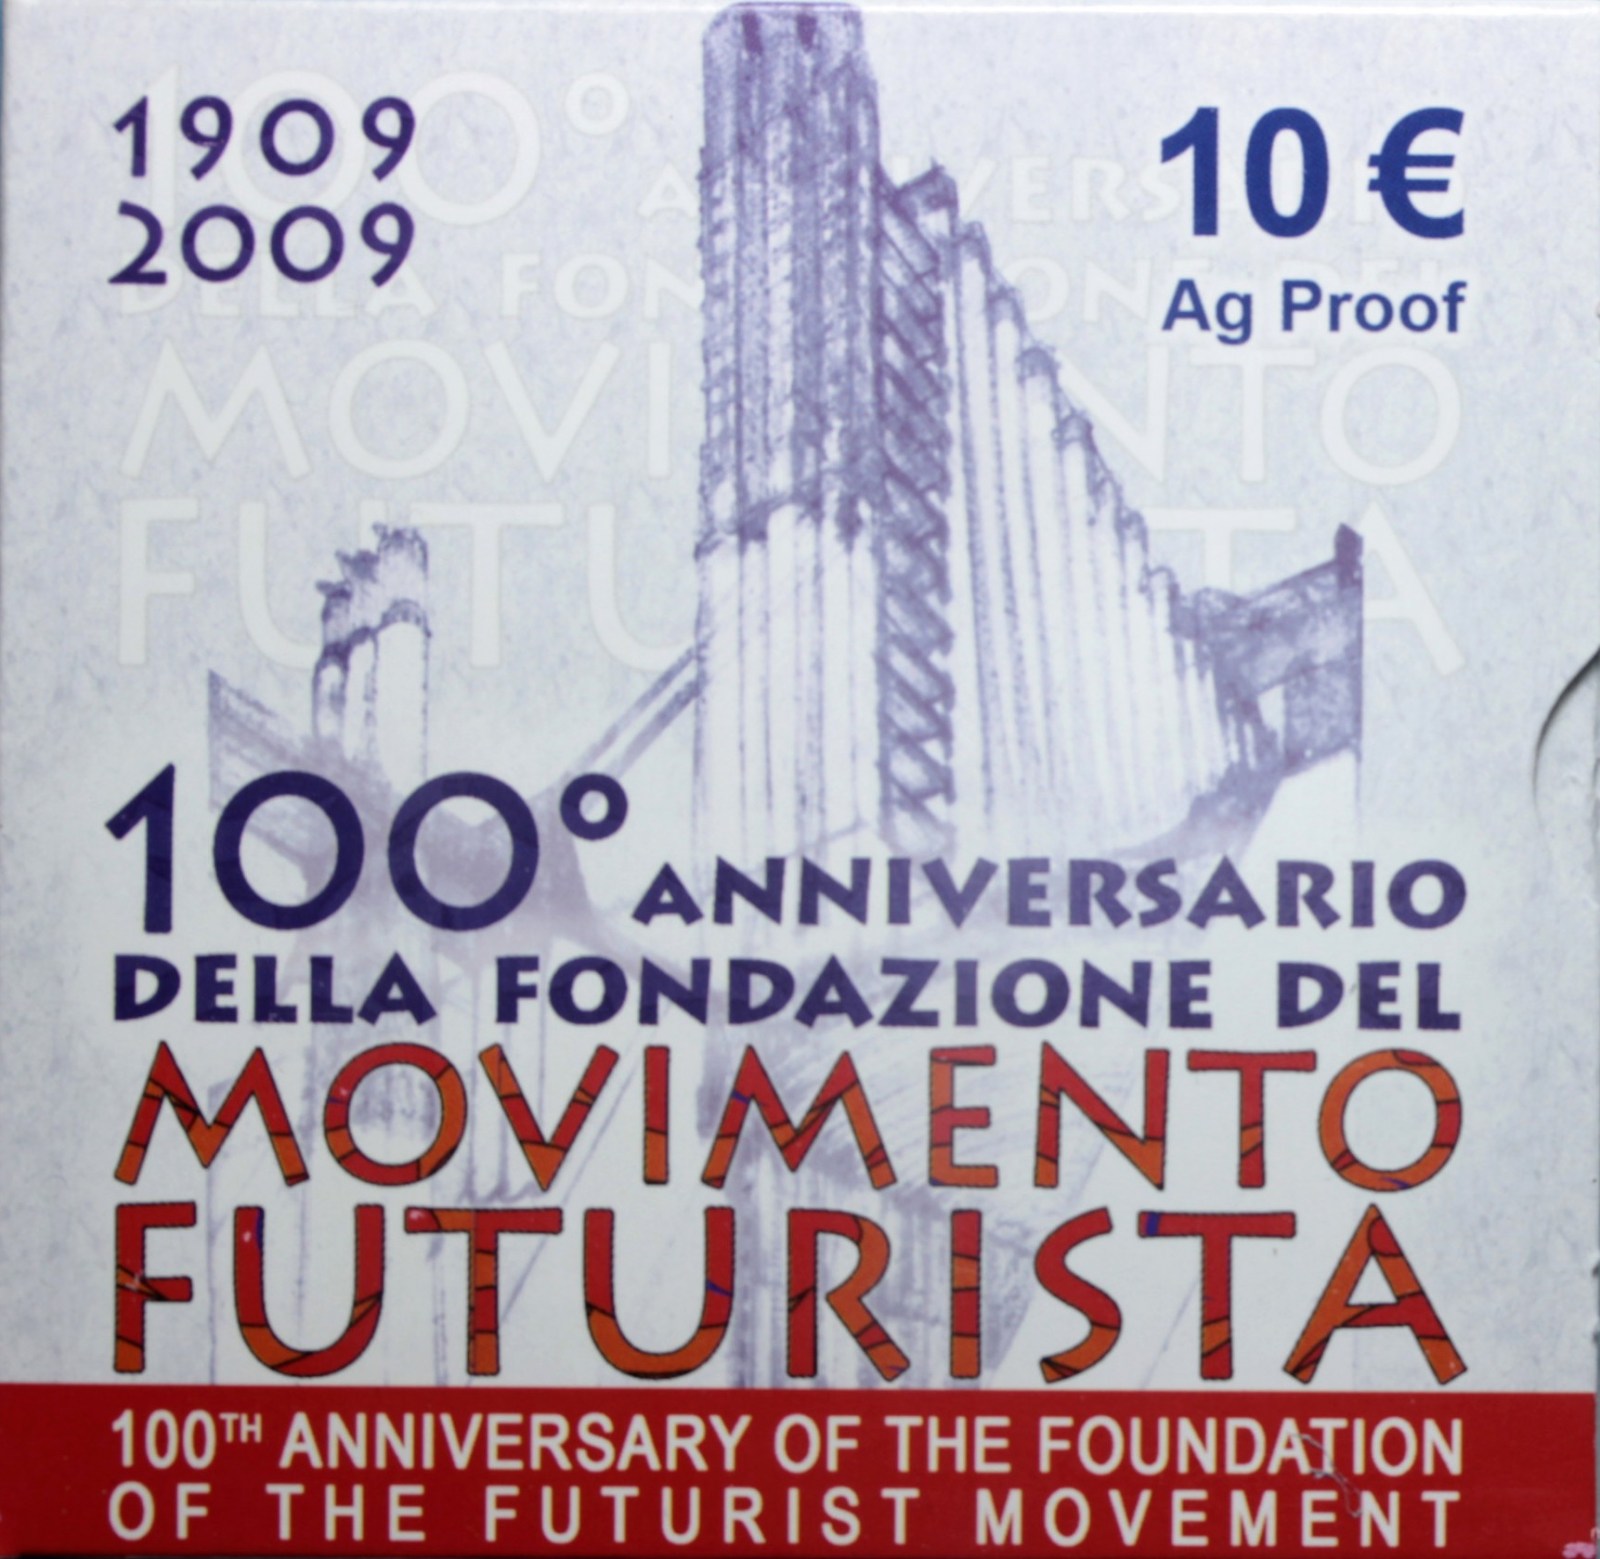 ITALIA 10 EURO COMMEMORATIVO 2009 MOVIMENTO FUTURISTA PROOF SCATOLA E GARANZIA